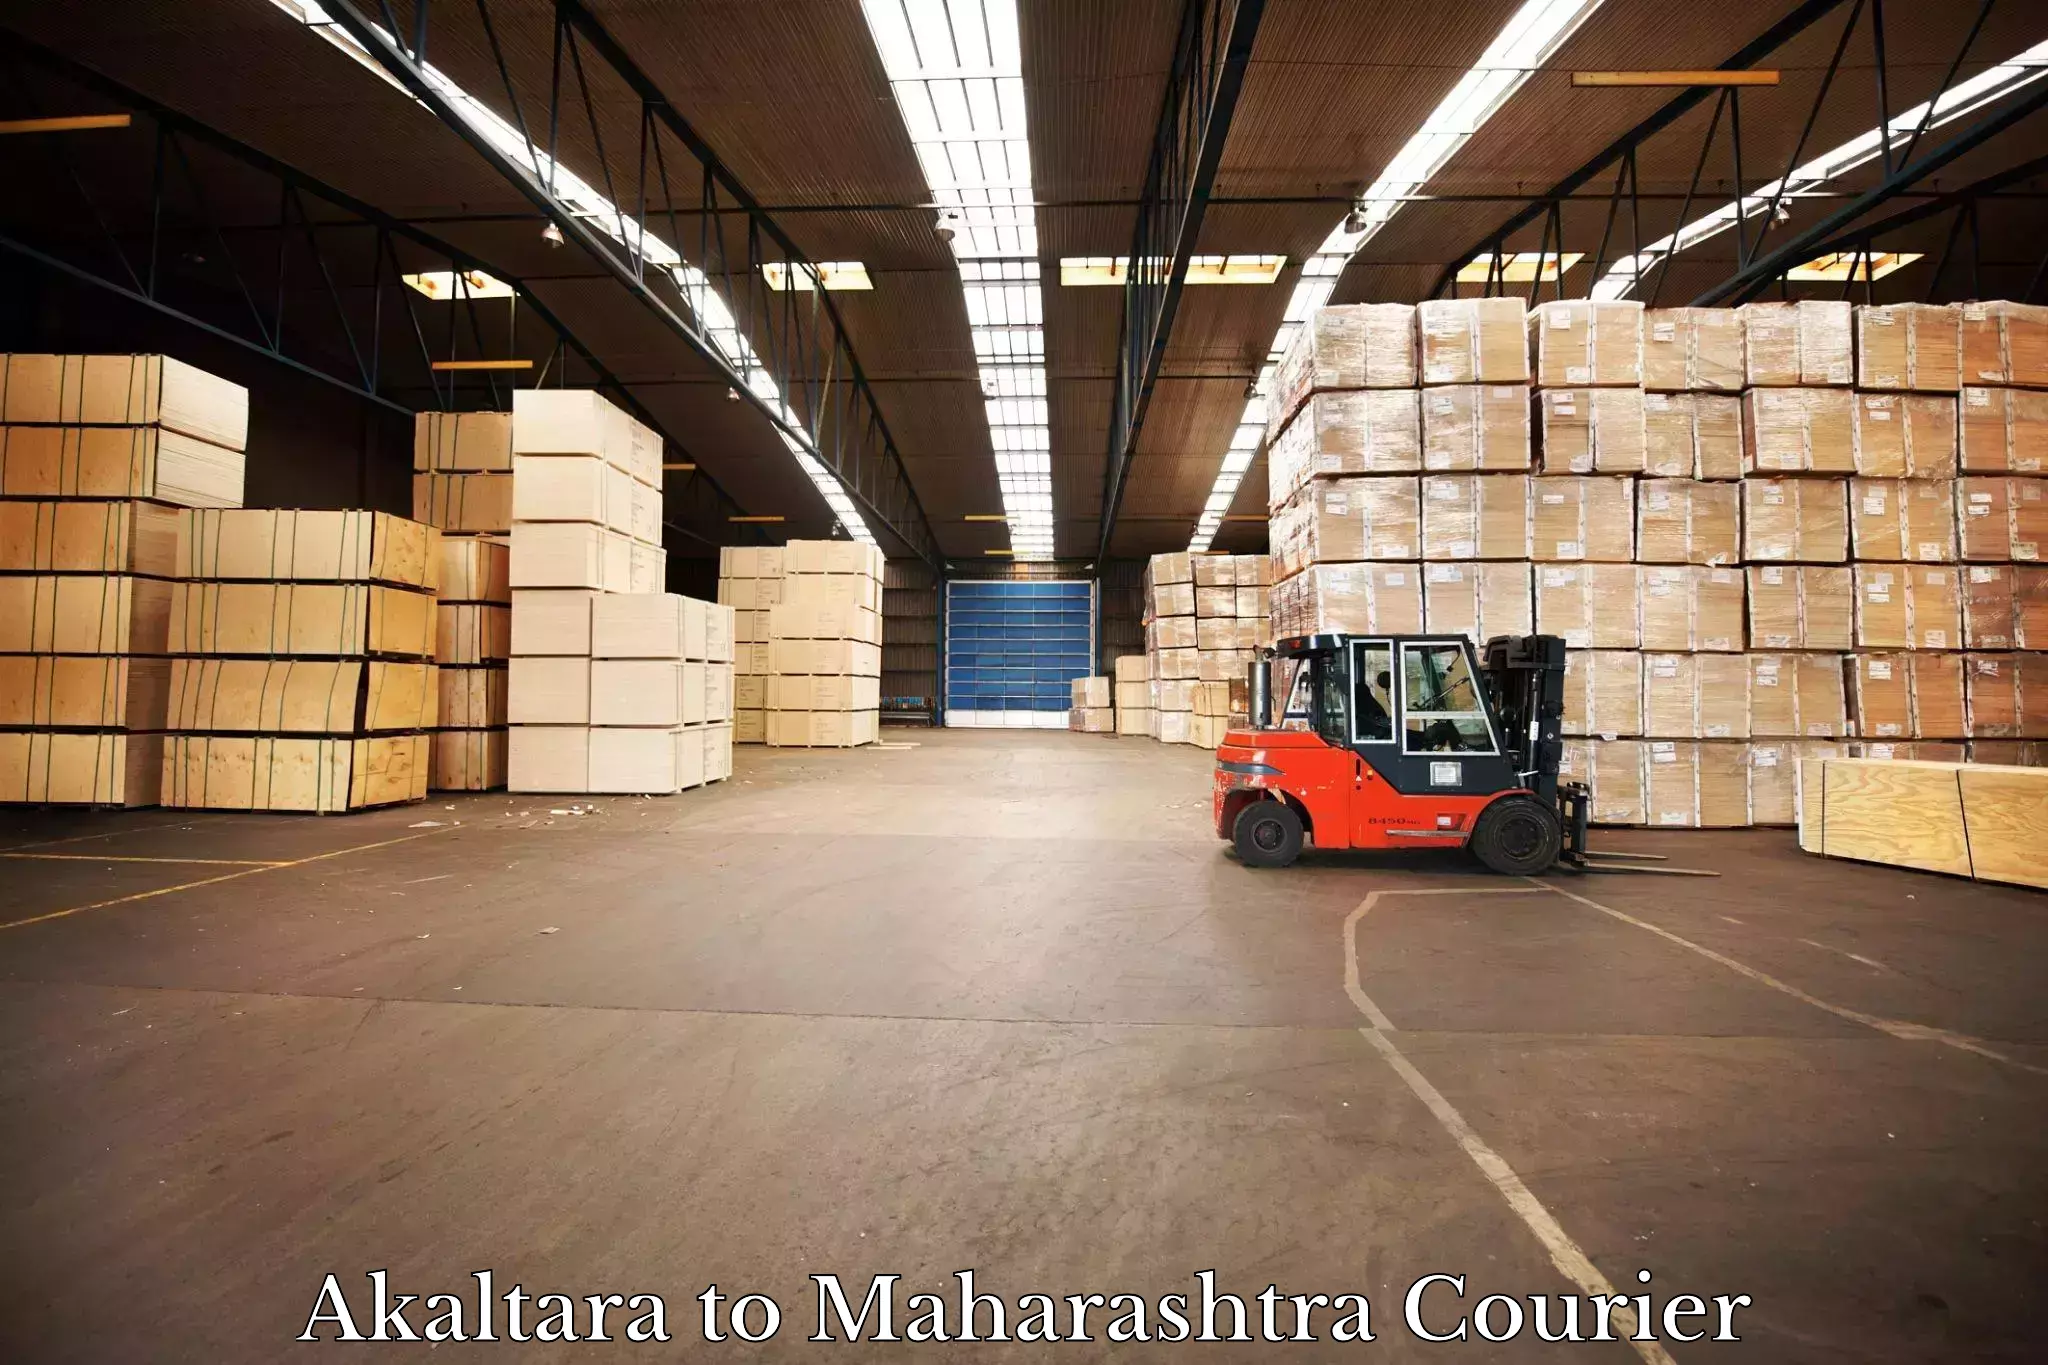 Dynamic courier operations Akaltara to Maharashtra